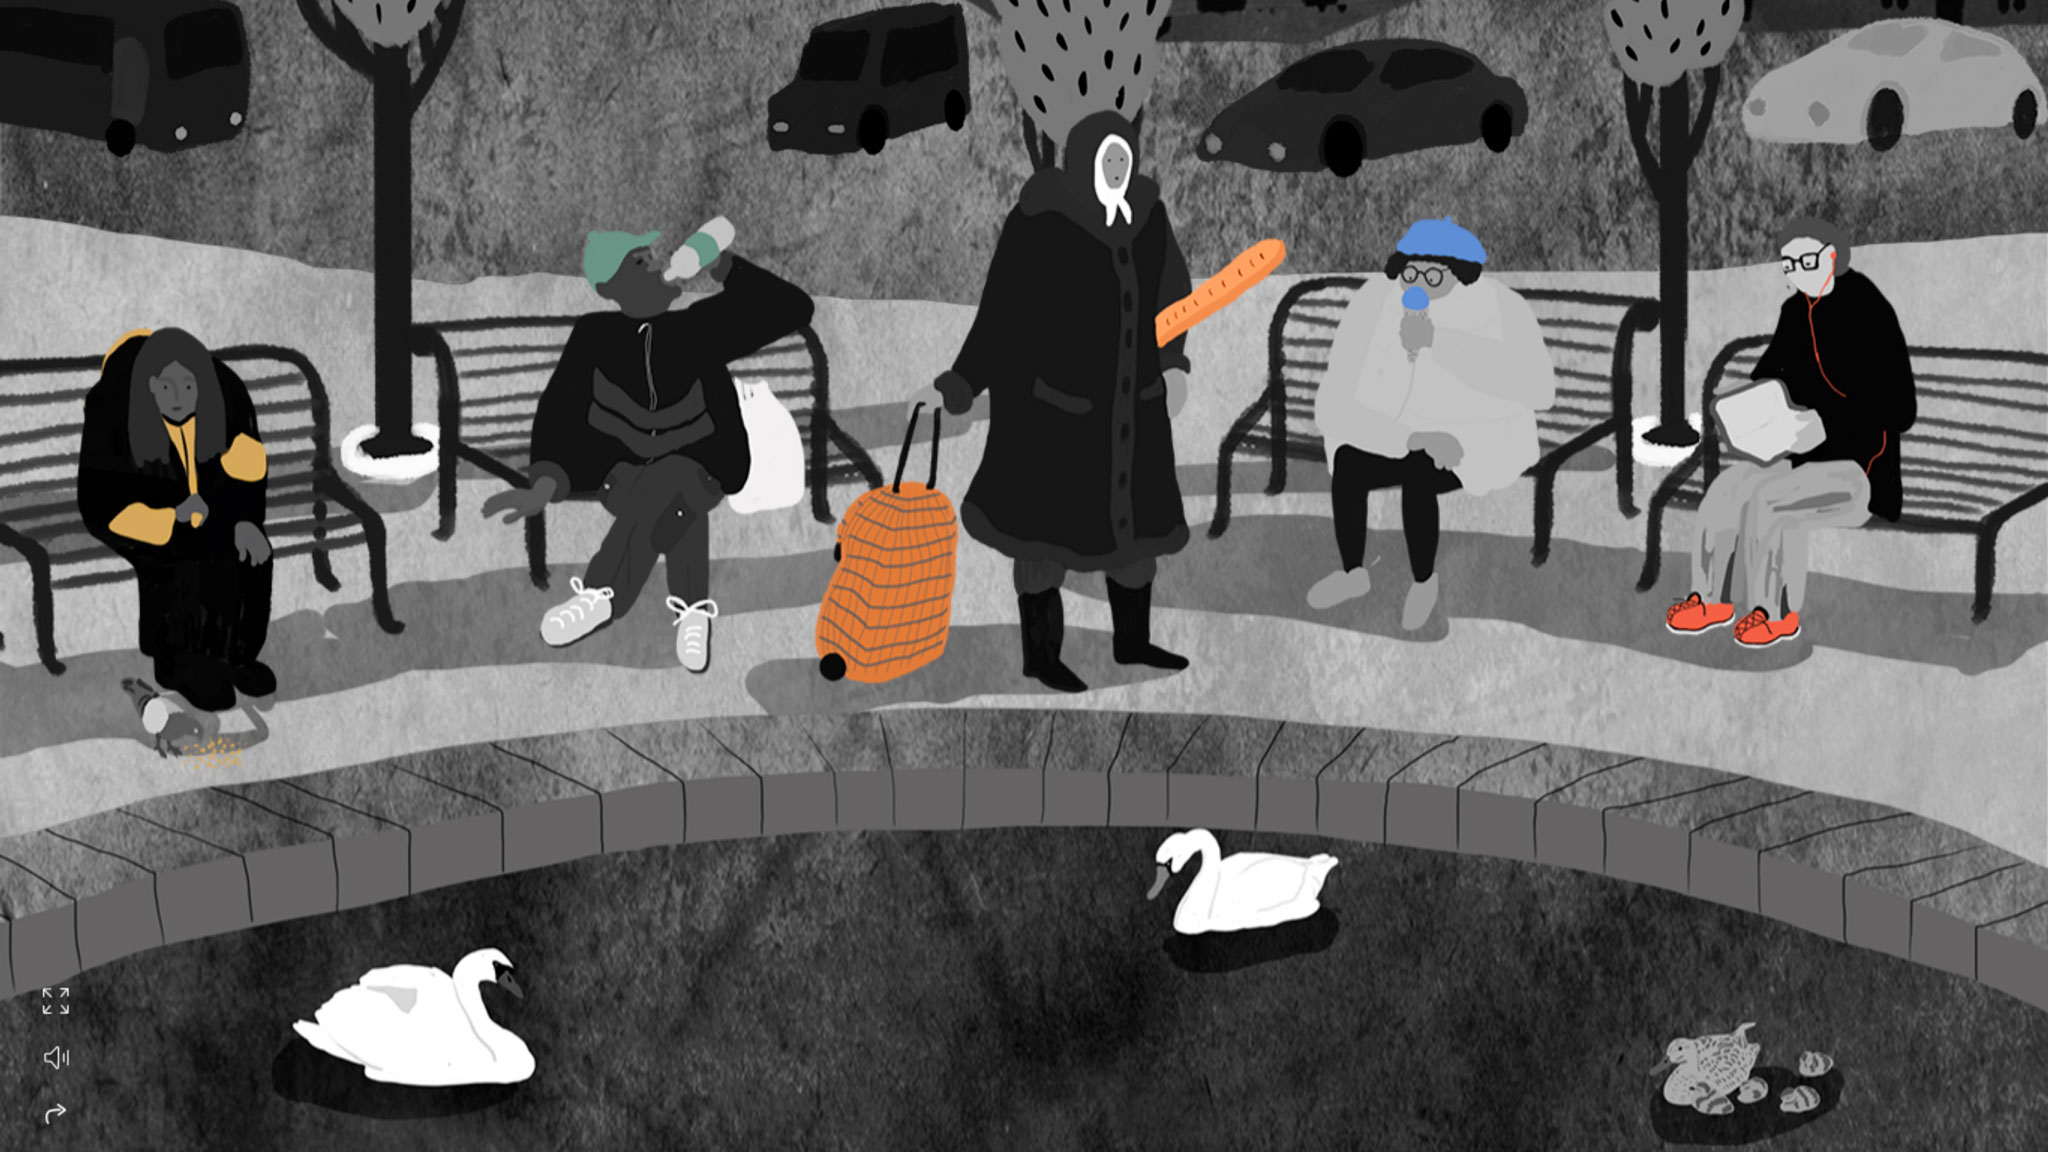 Документальный интерактивный анимационный веб‑проект «жили|были» был подготовлен ко Дню бездомного человека